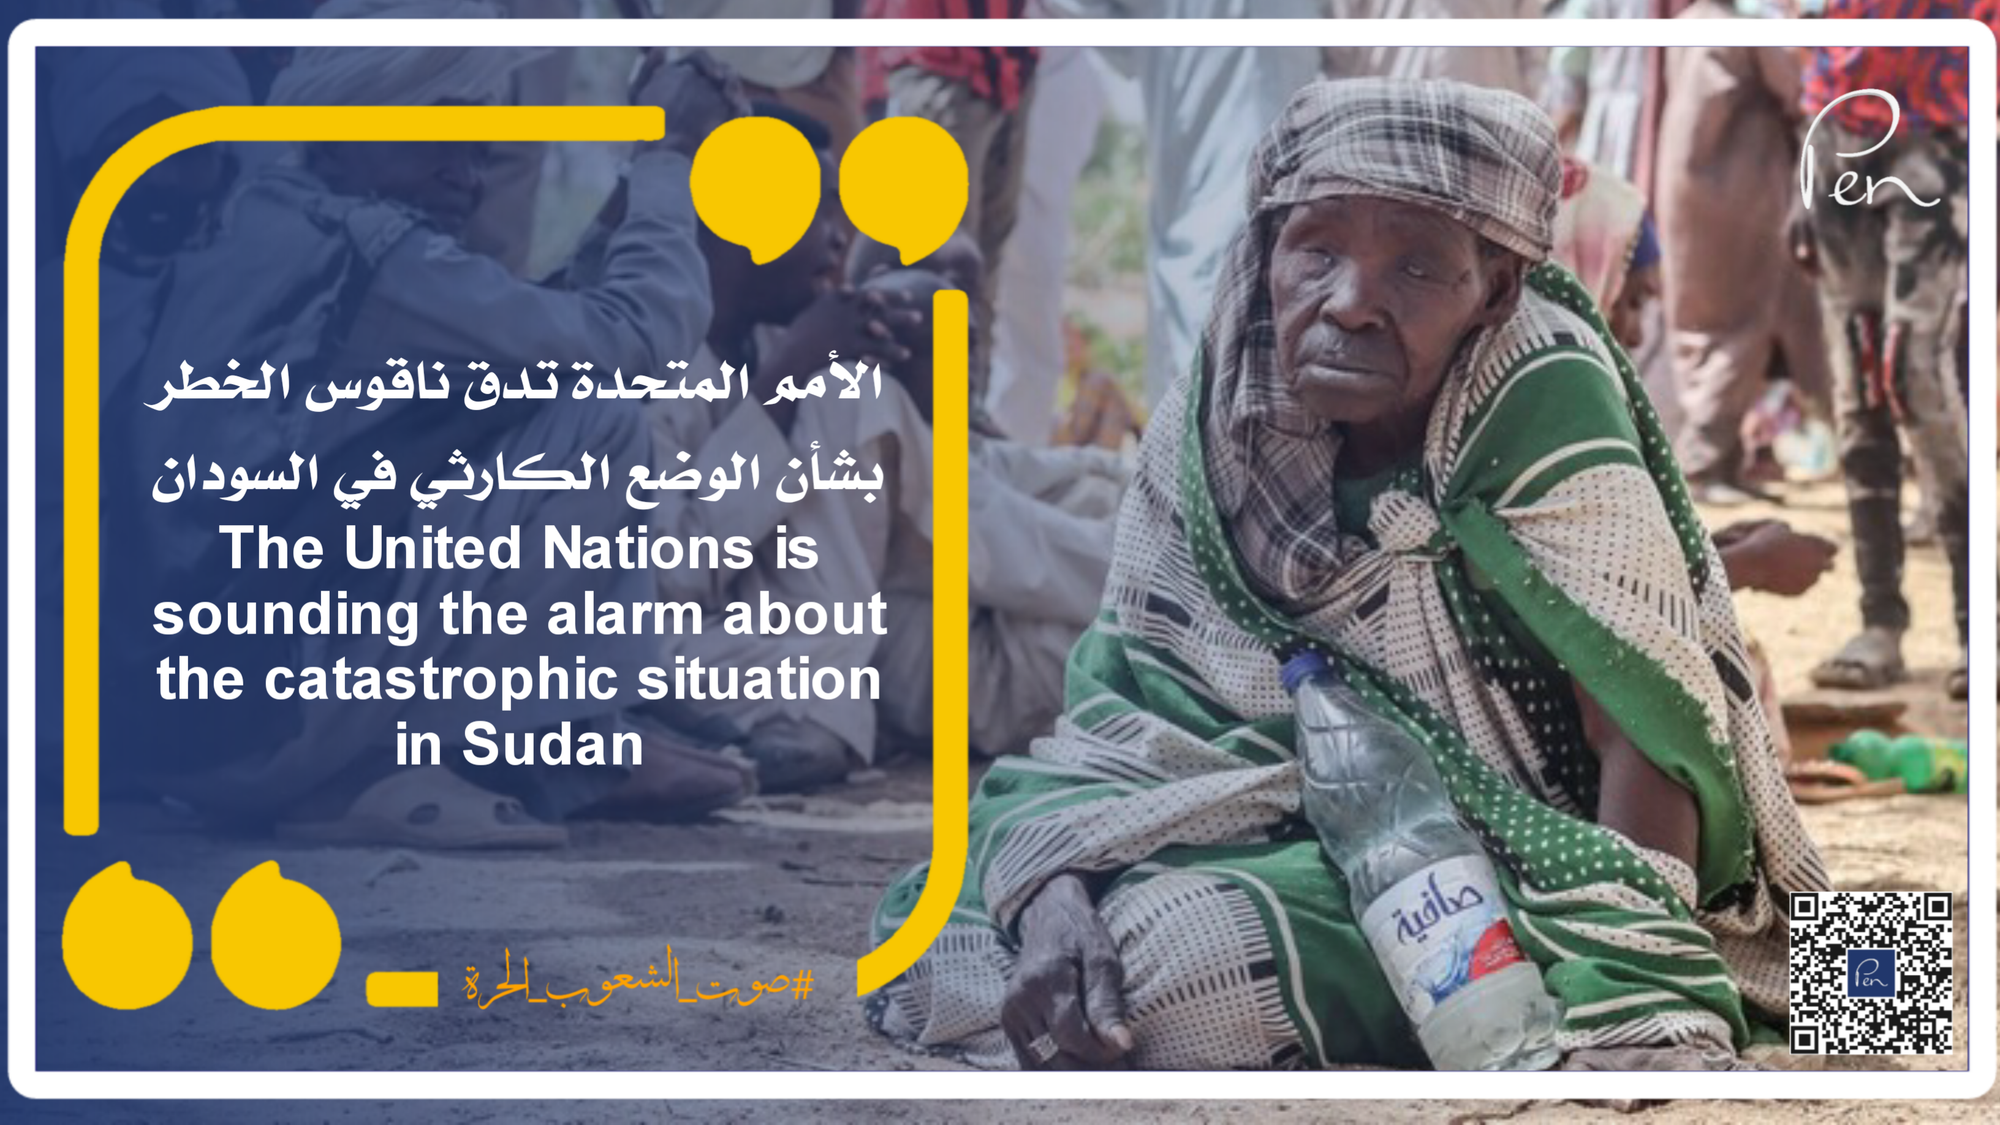 الأمم المتحدة تدق ناقوس الخطر بشأن الوضع الكارثي في السودان